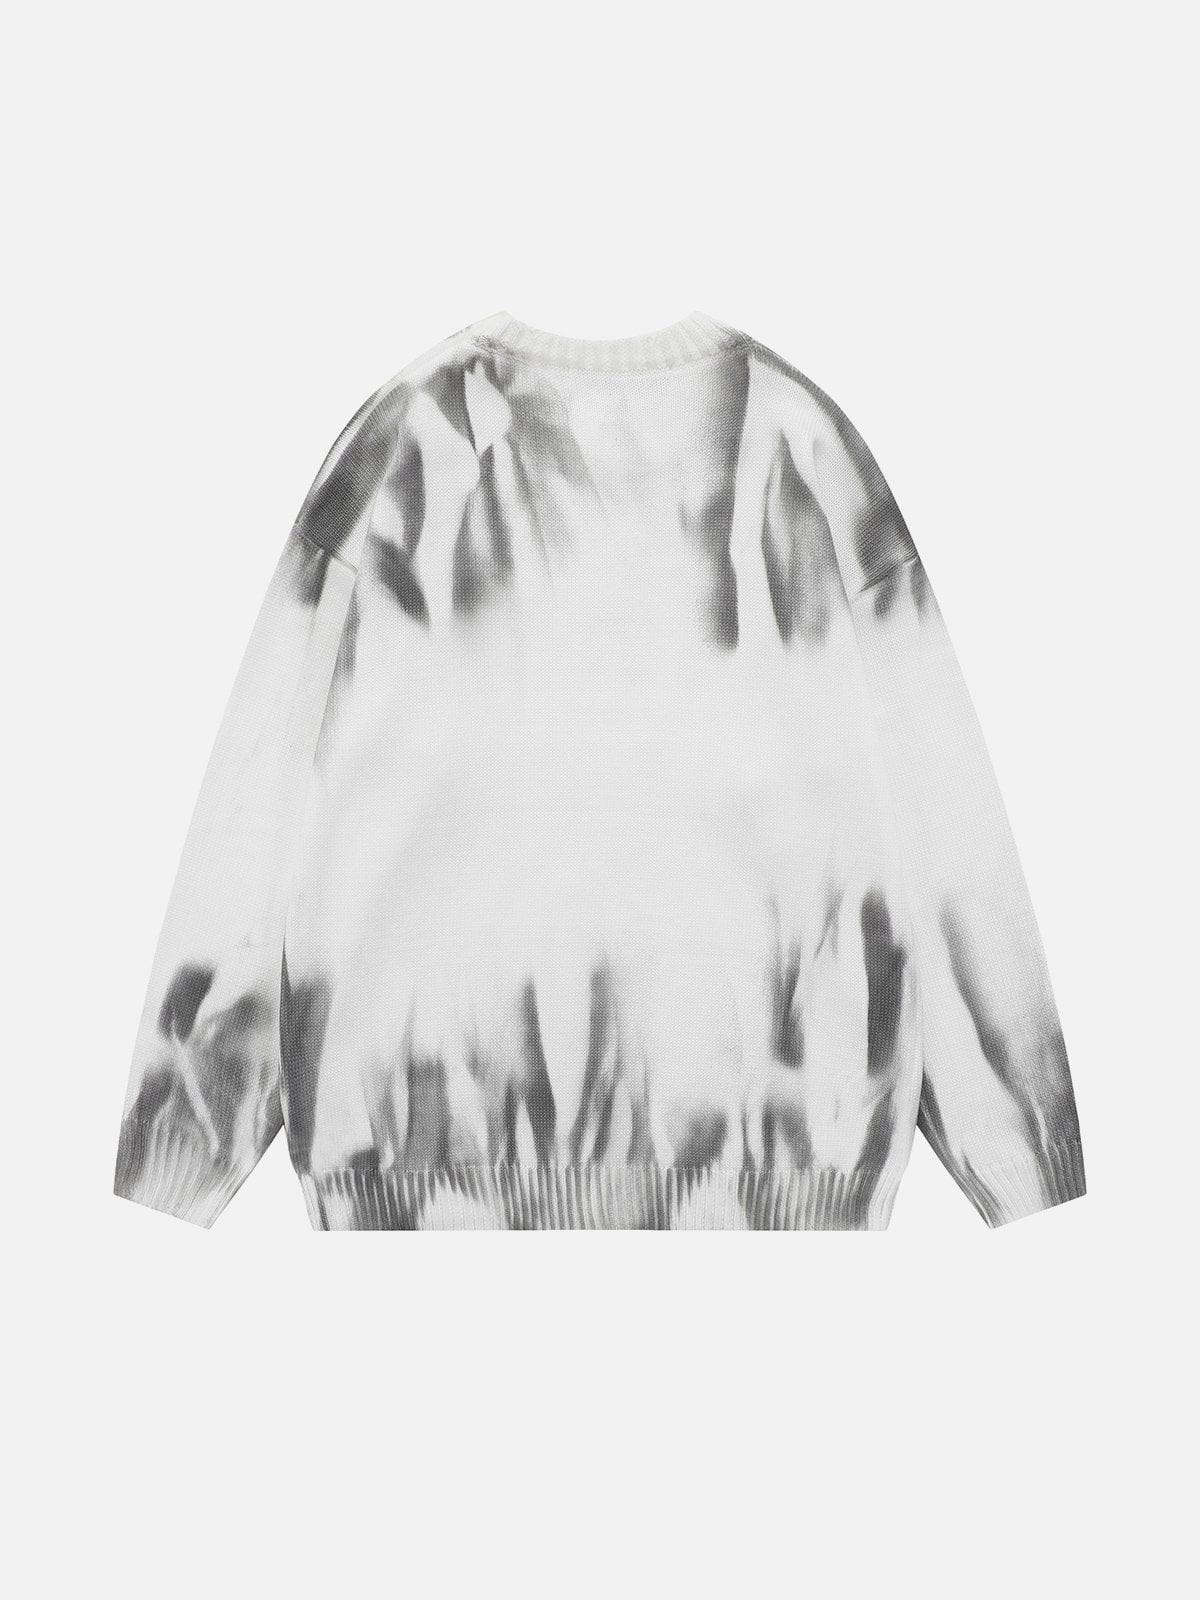 Majesda® - Tie Dye Letter Sweater outfit ideas streetwear fashion